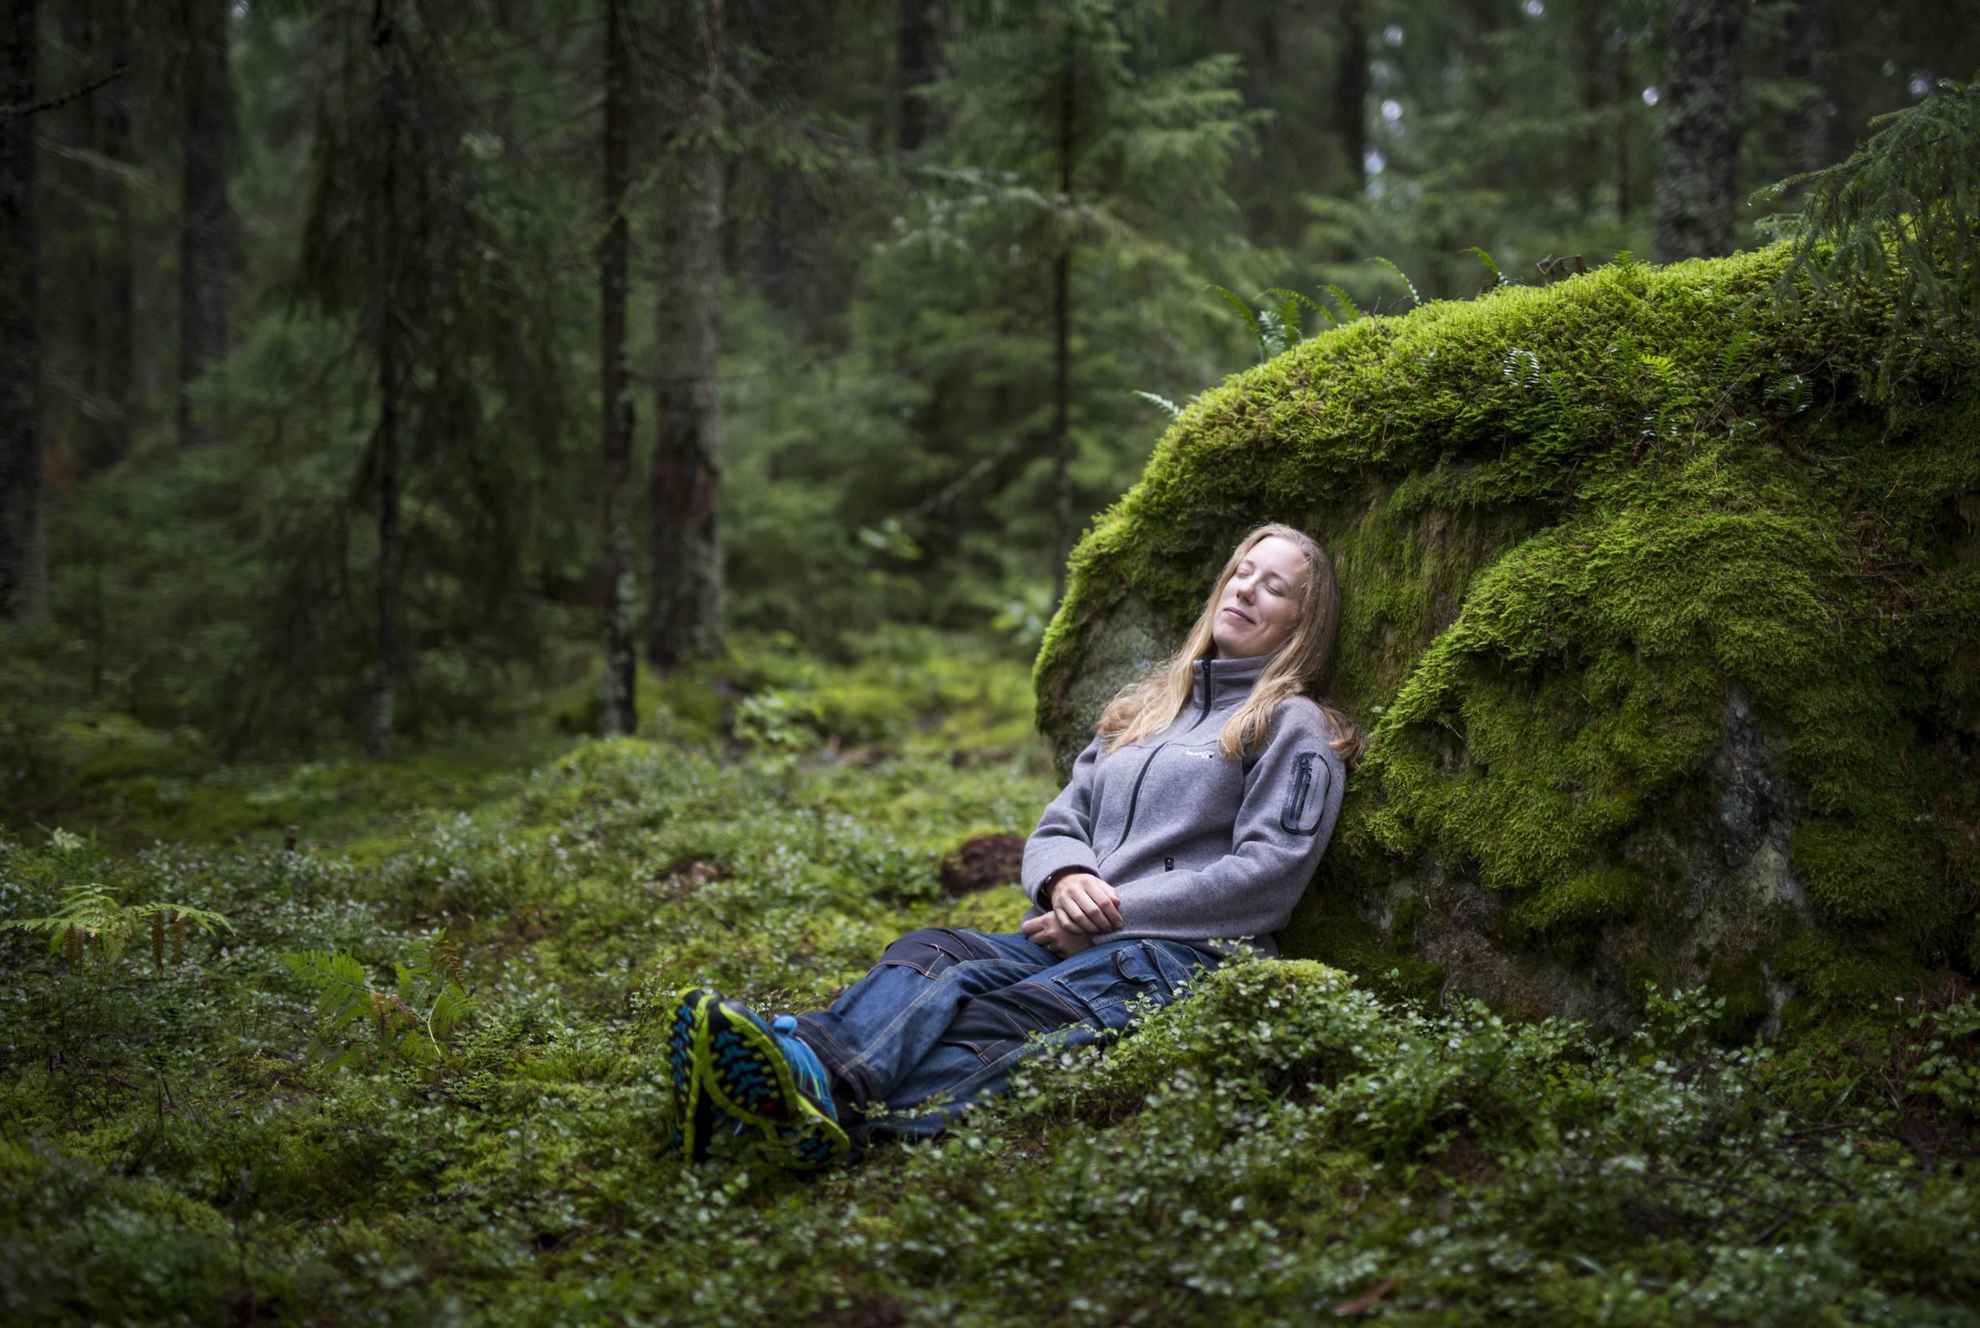 Une femme est assise par terre dans une forêt et s'appuie contre un rocher recouvert de mousse.